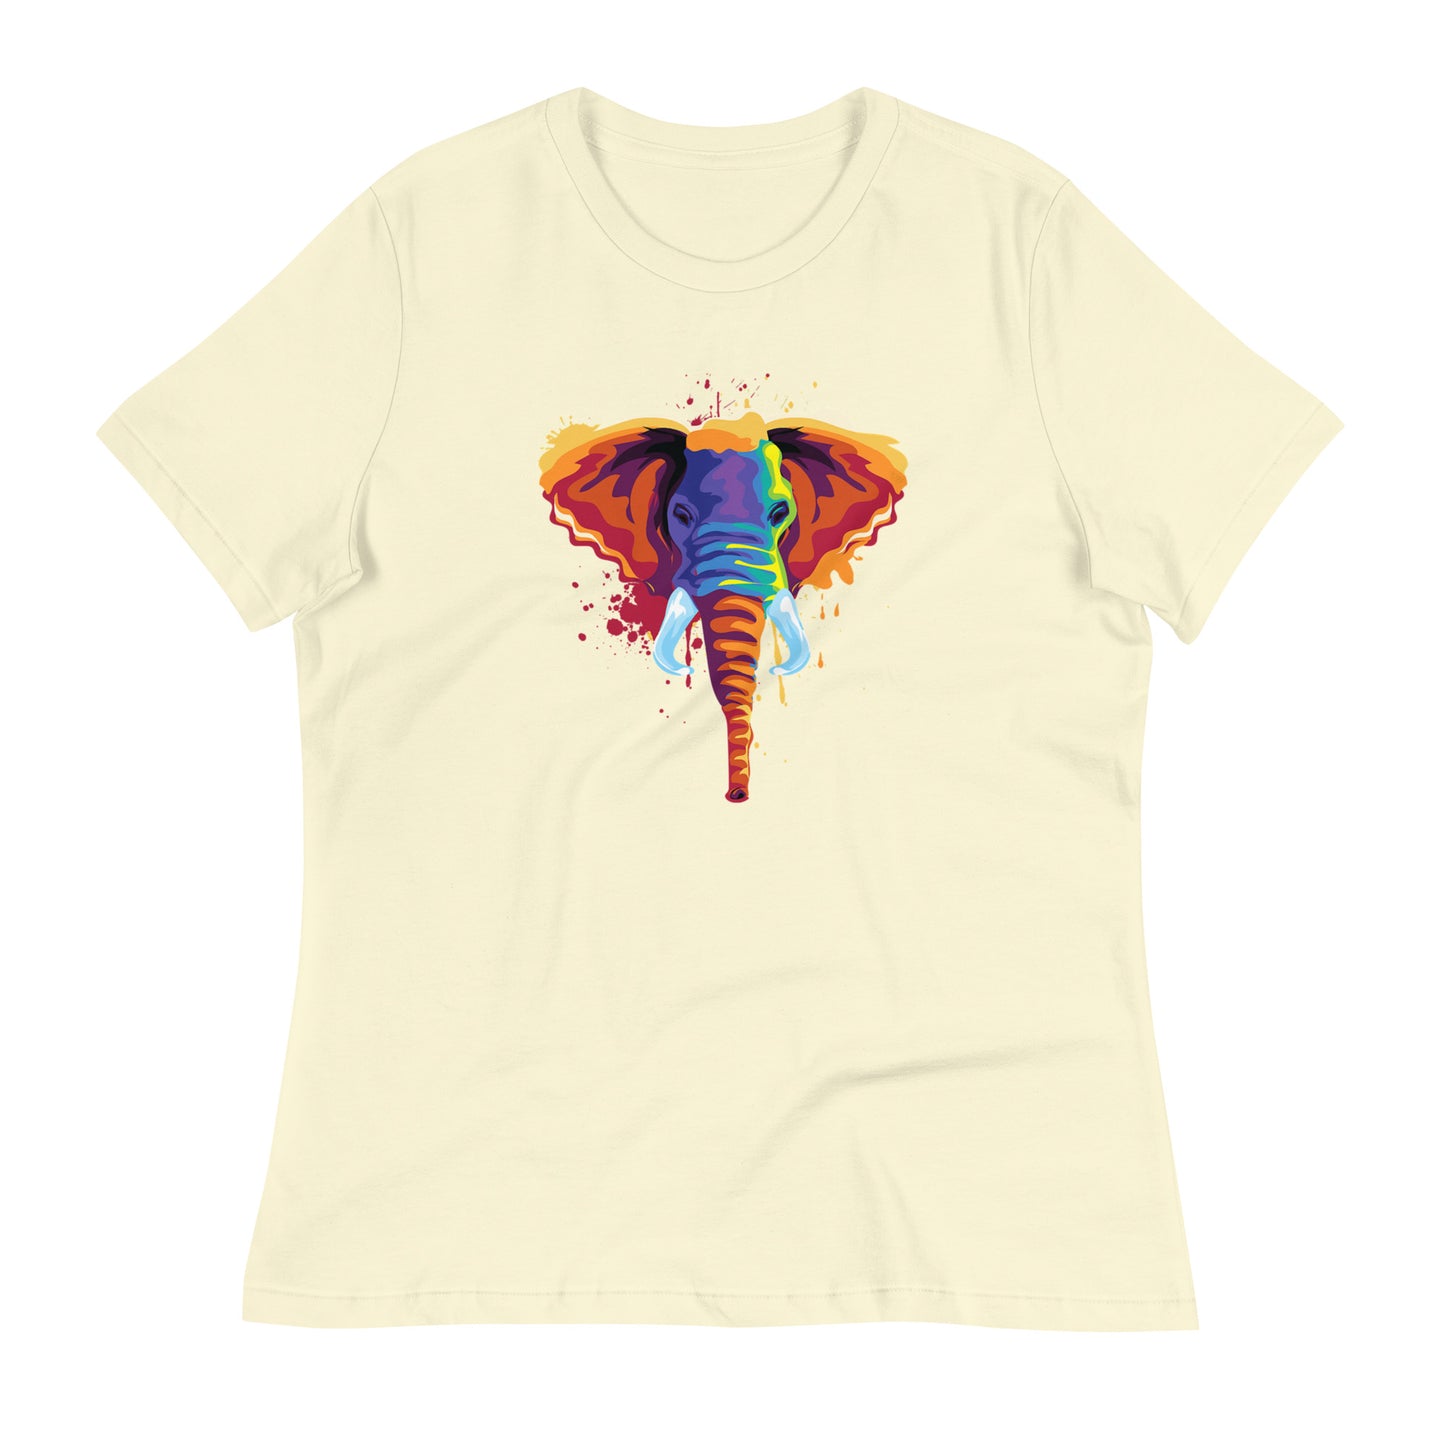 Women's Relaxed Soft & Smooth Premium Quality T-Shirt Elephant Art Design by IOBI Original Apparel